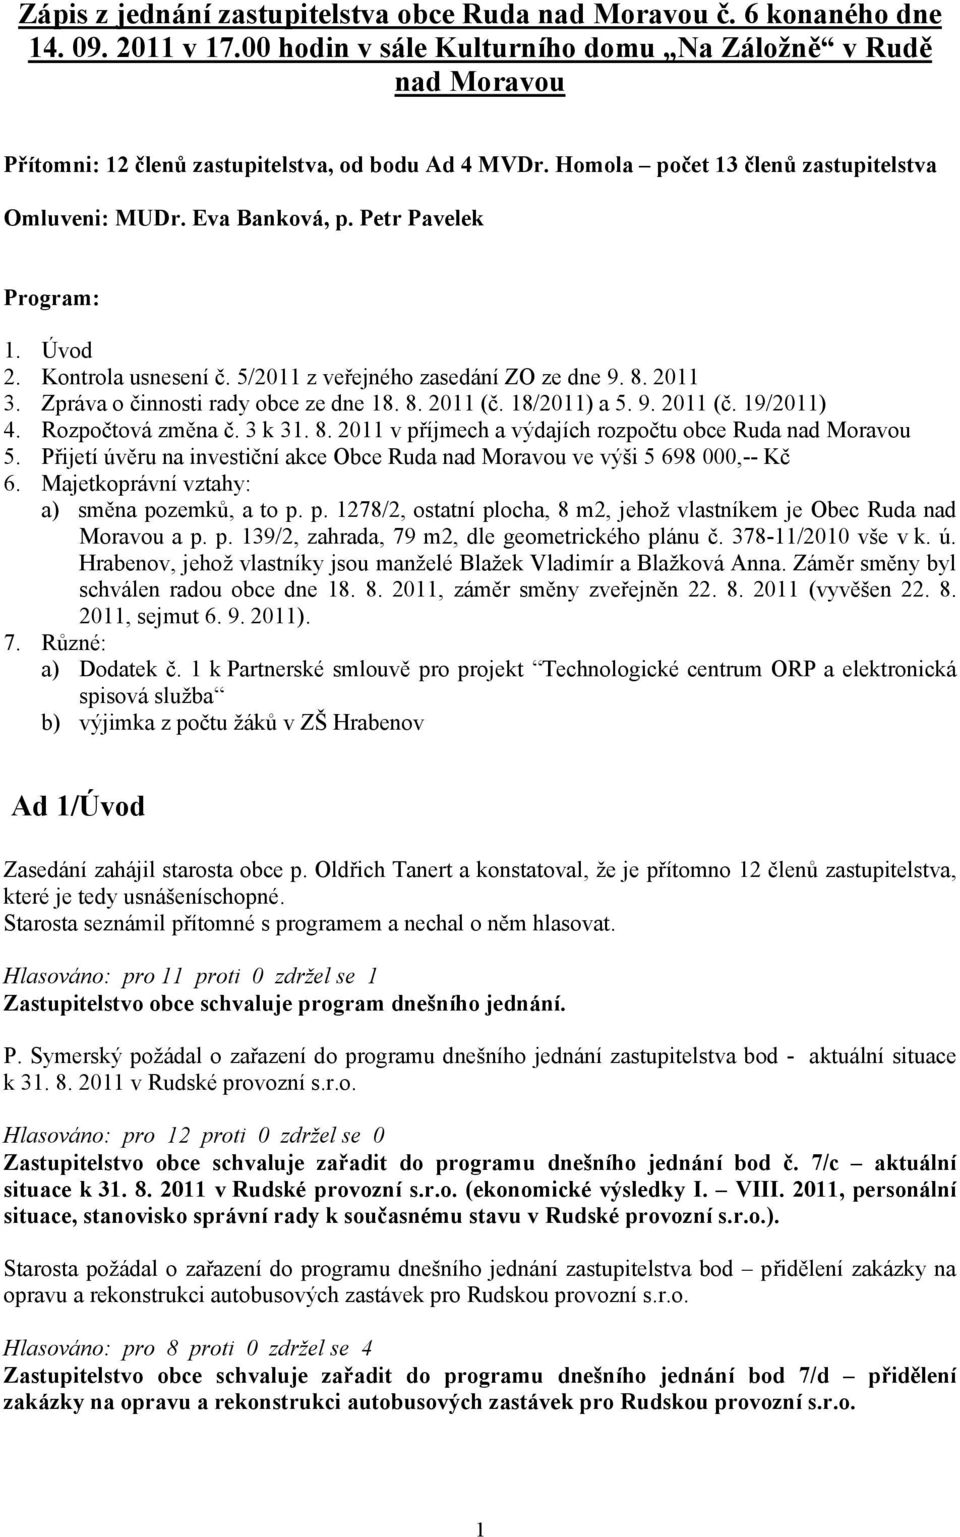 Petr Pavelek Program: 1. Úvod 2. Kontrola usnesení č. 5/2011 z veřejného zasedání ZO ze dne 9. 8. 2011 3. Zpráva o činnosti rady obce ze dne 18. 8. 2011 (č. 18/2011) a 5. 9. 2011 (č. 19/2011) 4.